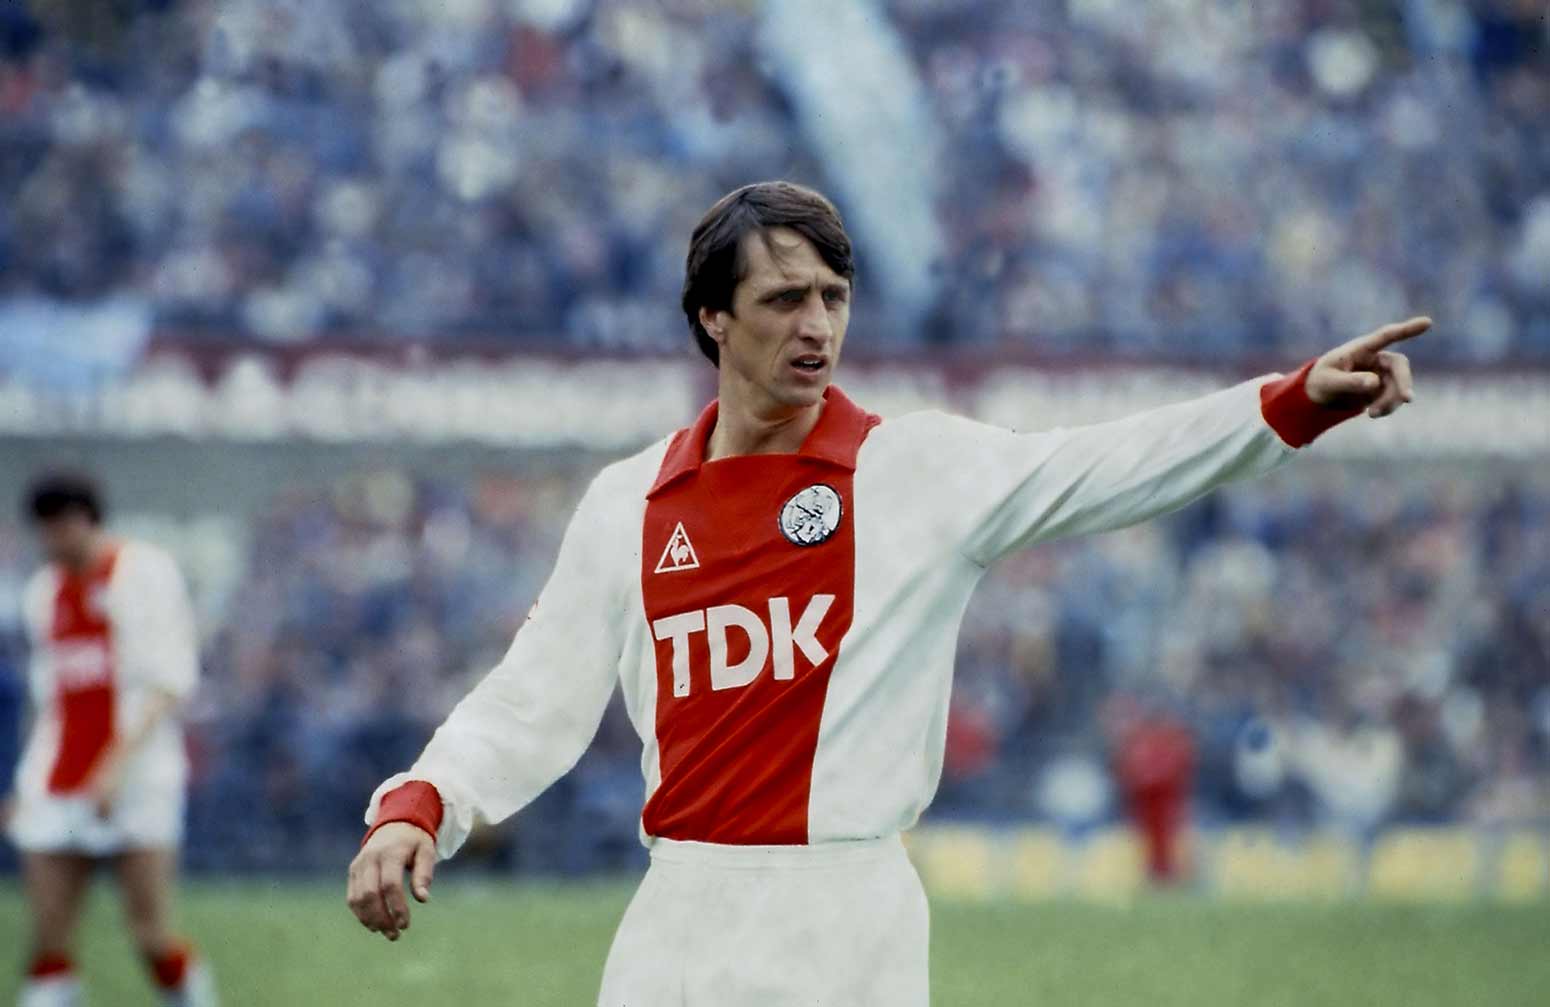 Hình ảnh Johan Cruyff khoác áo thi đấu của Ajax Amsterdam